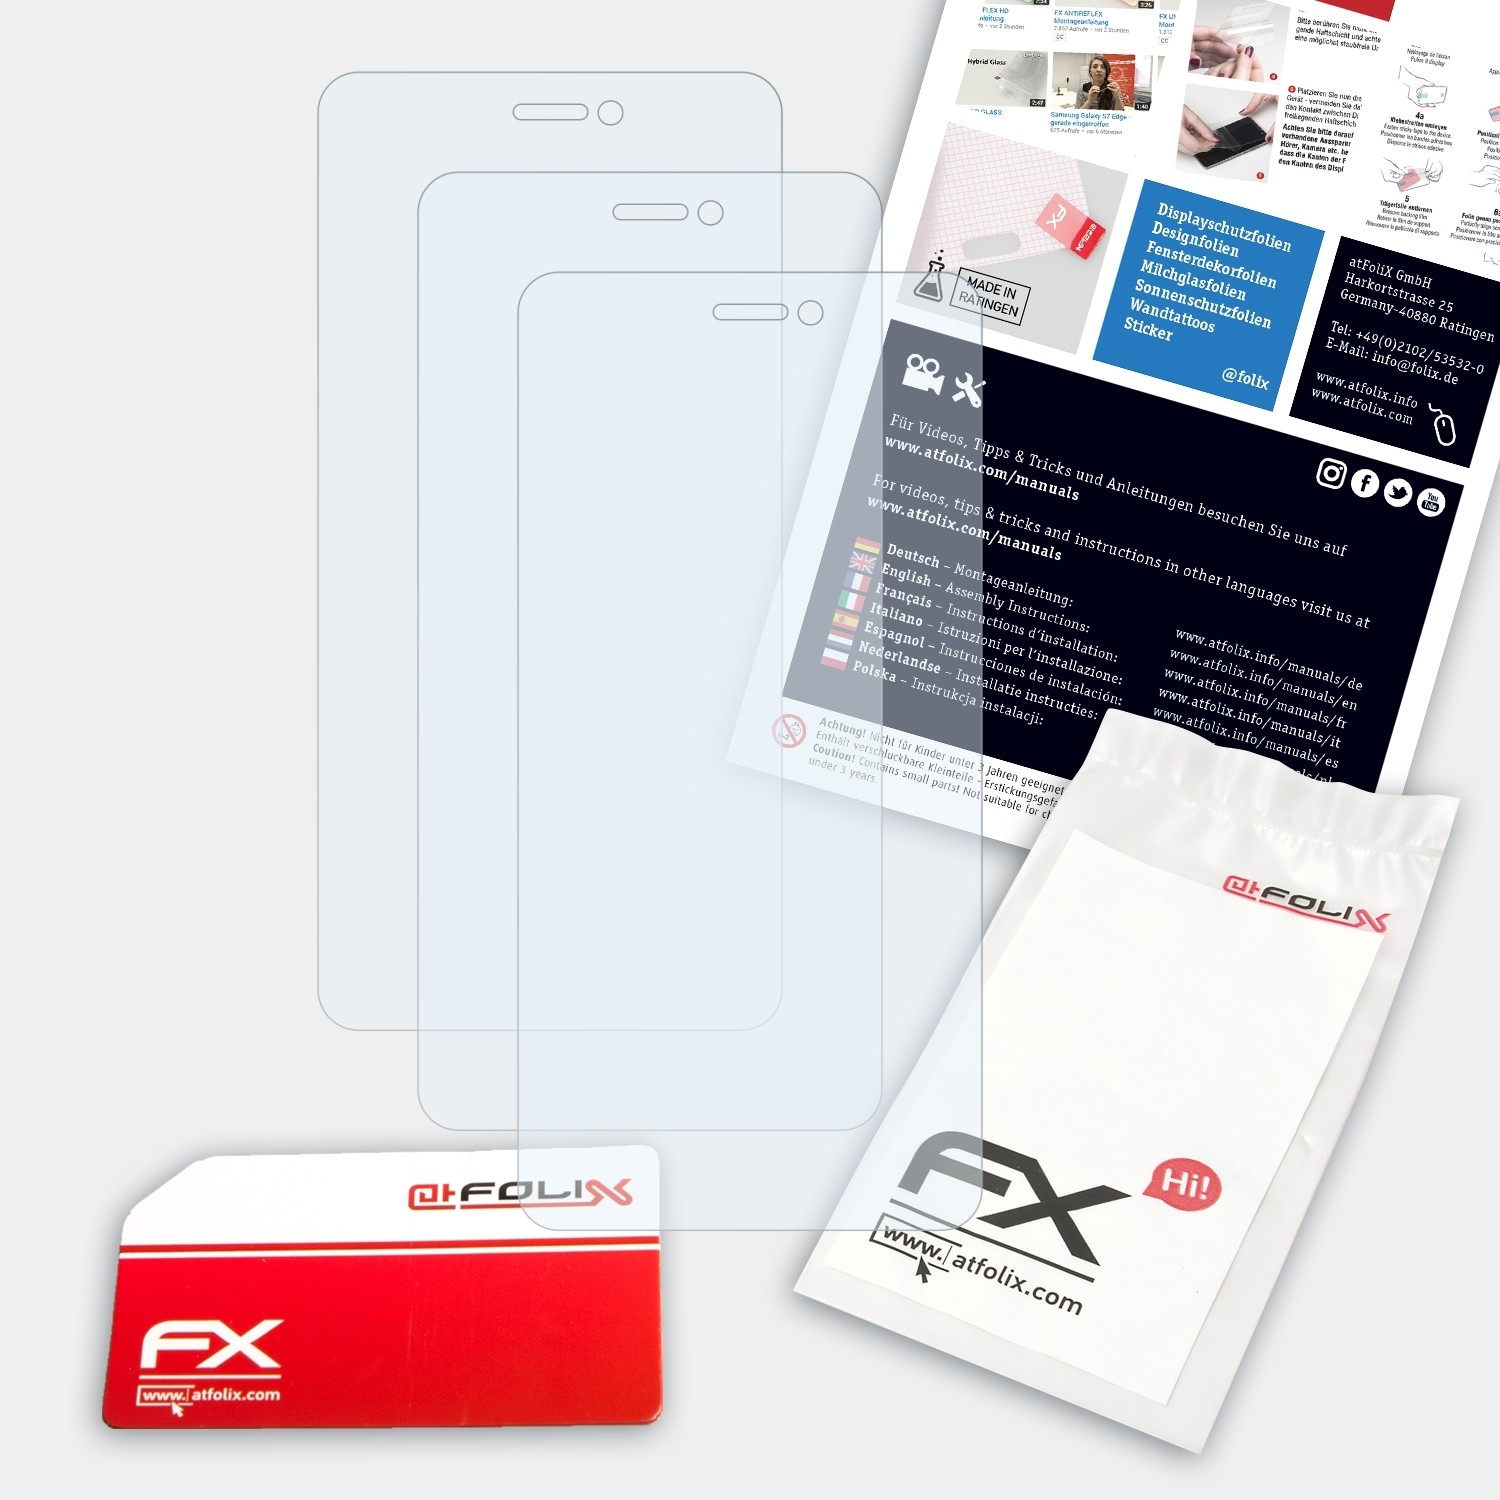 ATFOLIX 3x FX-Clear Displayschutz(für P7 Lite) Allview